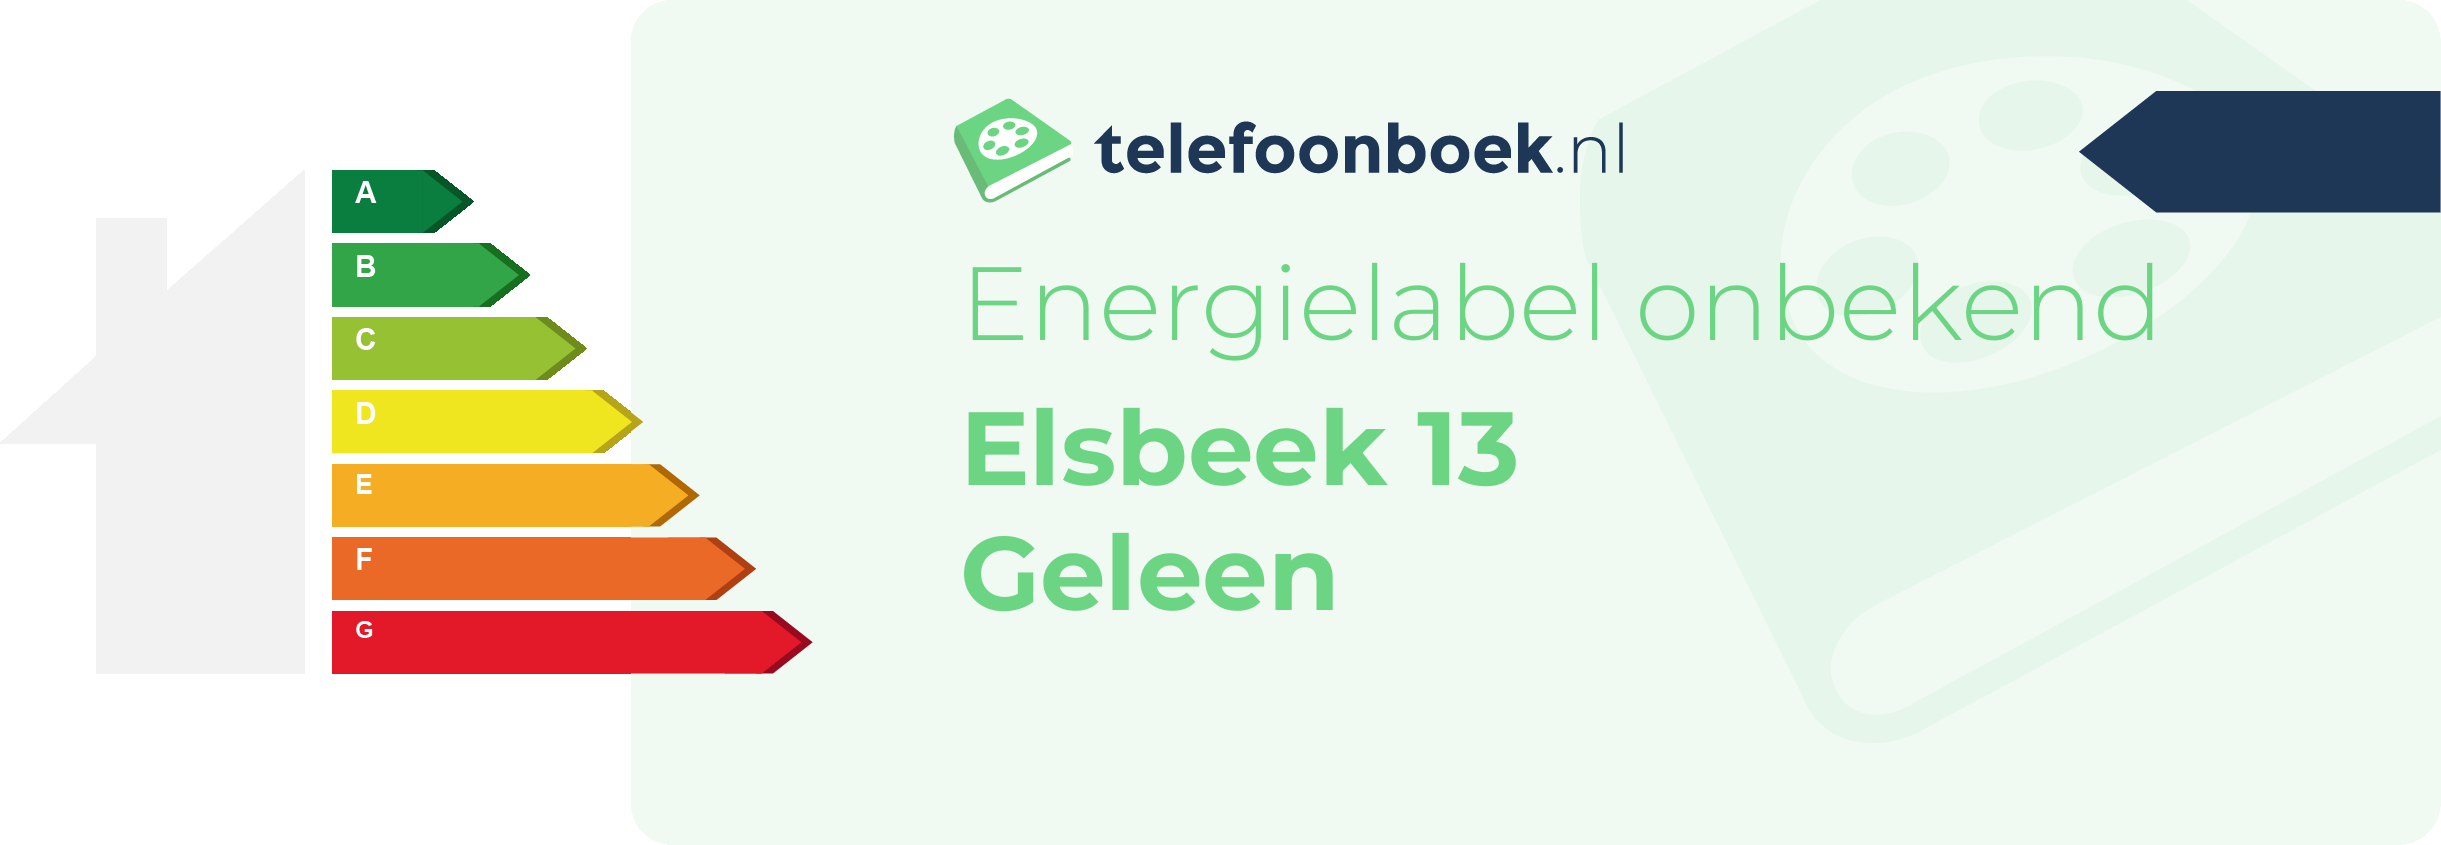 Energielabel Elsbeek 13 Geleen